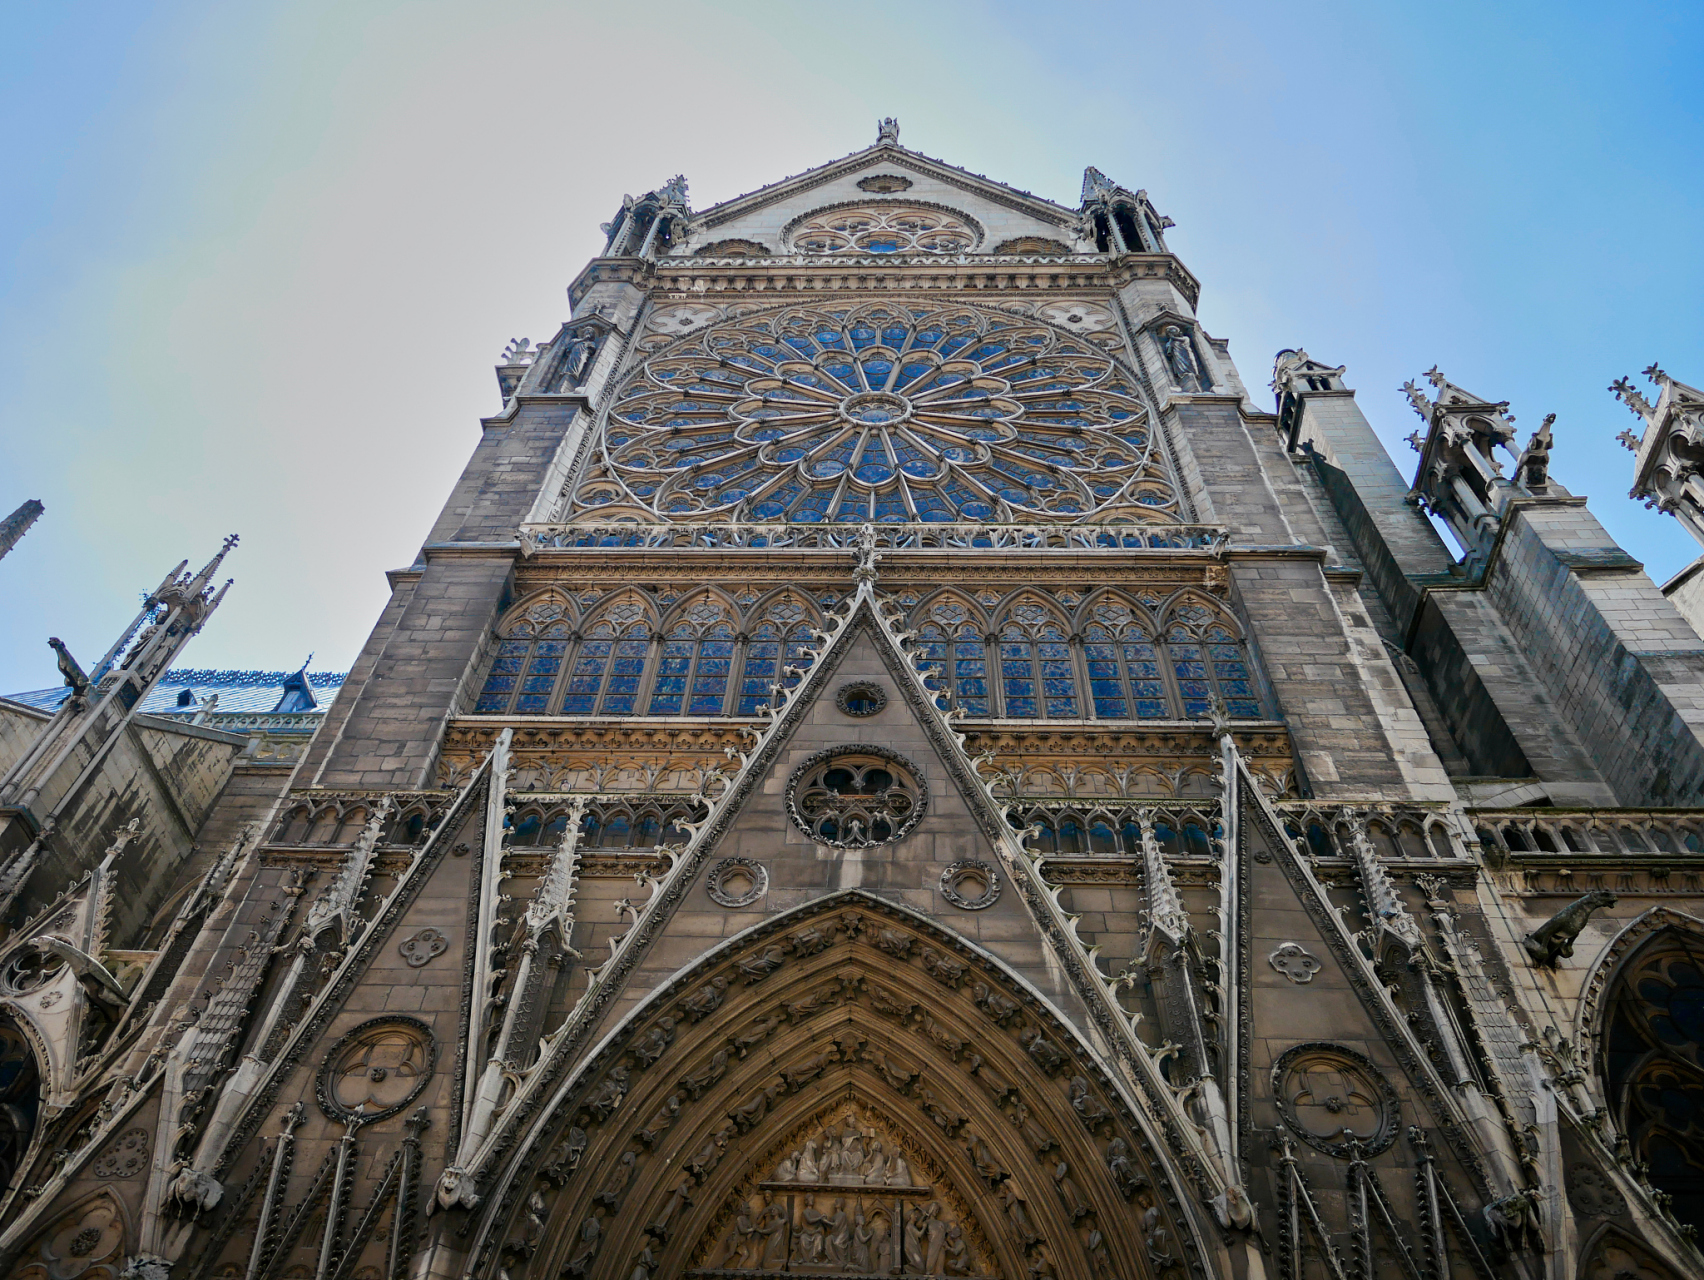 让我们来聊聊巴黎圣母院,这是一座世界著名的哥特式建筑,位于法国